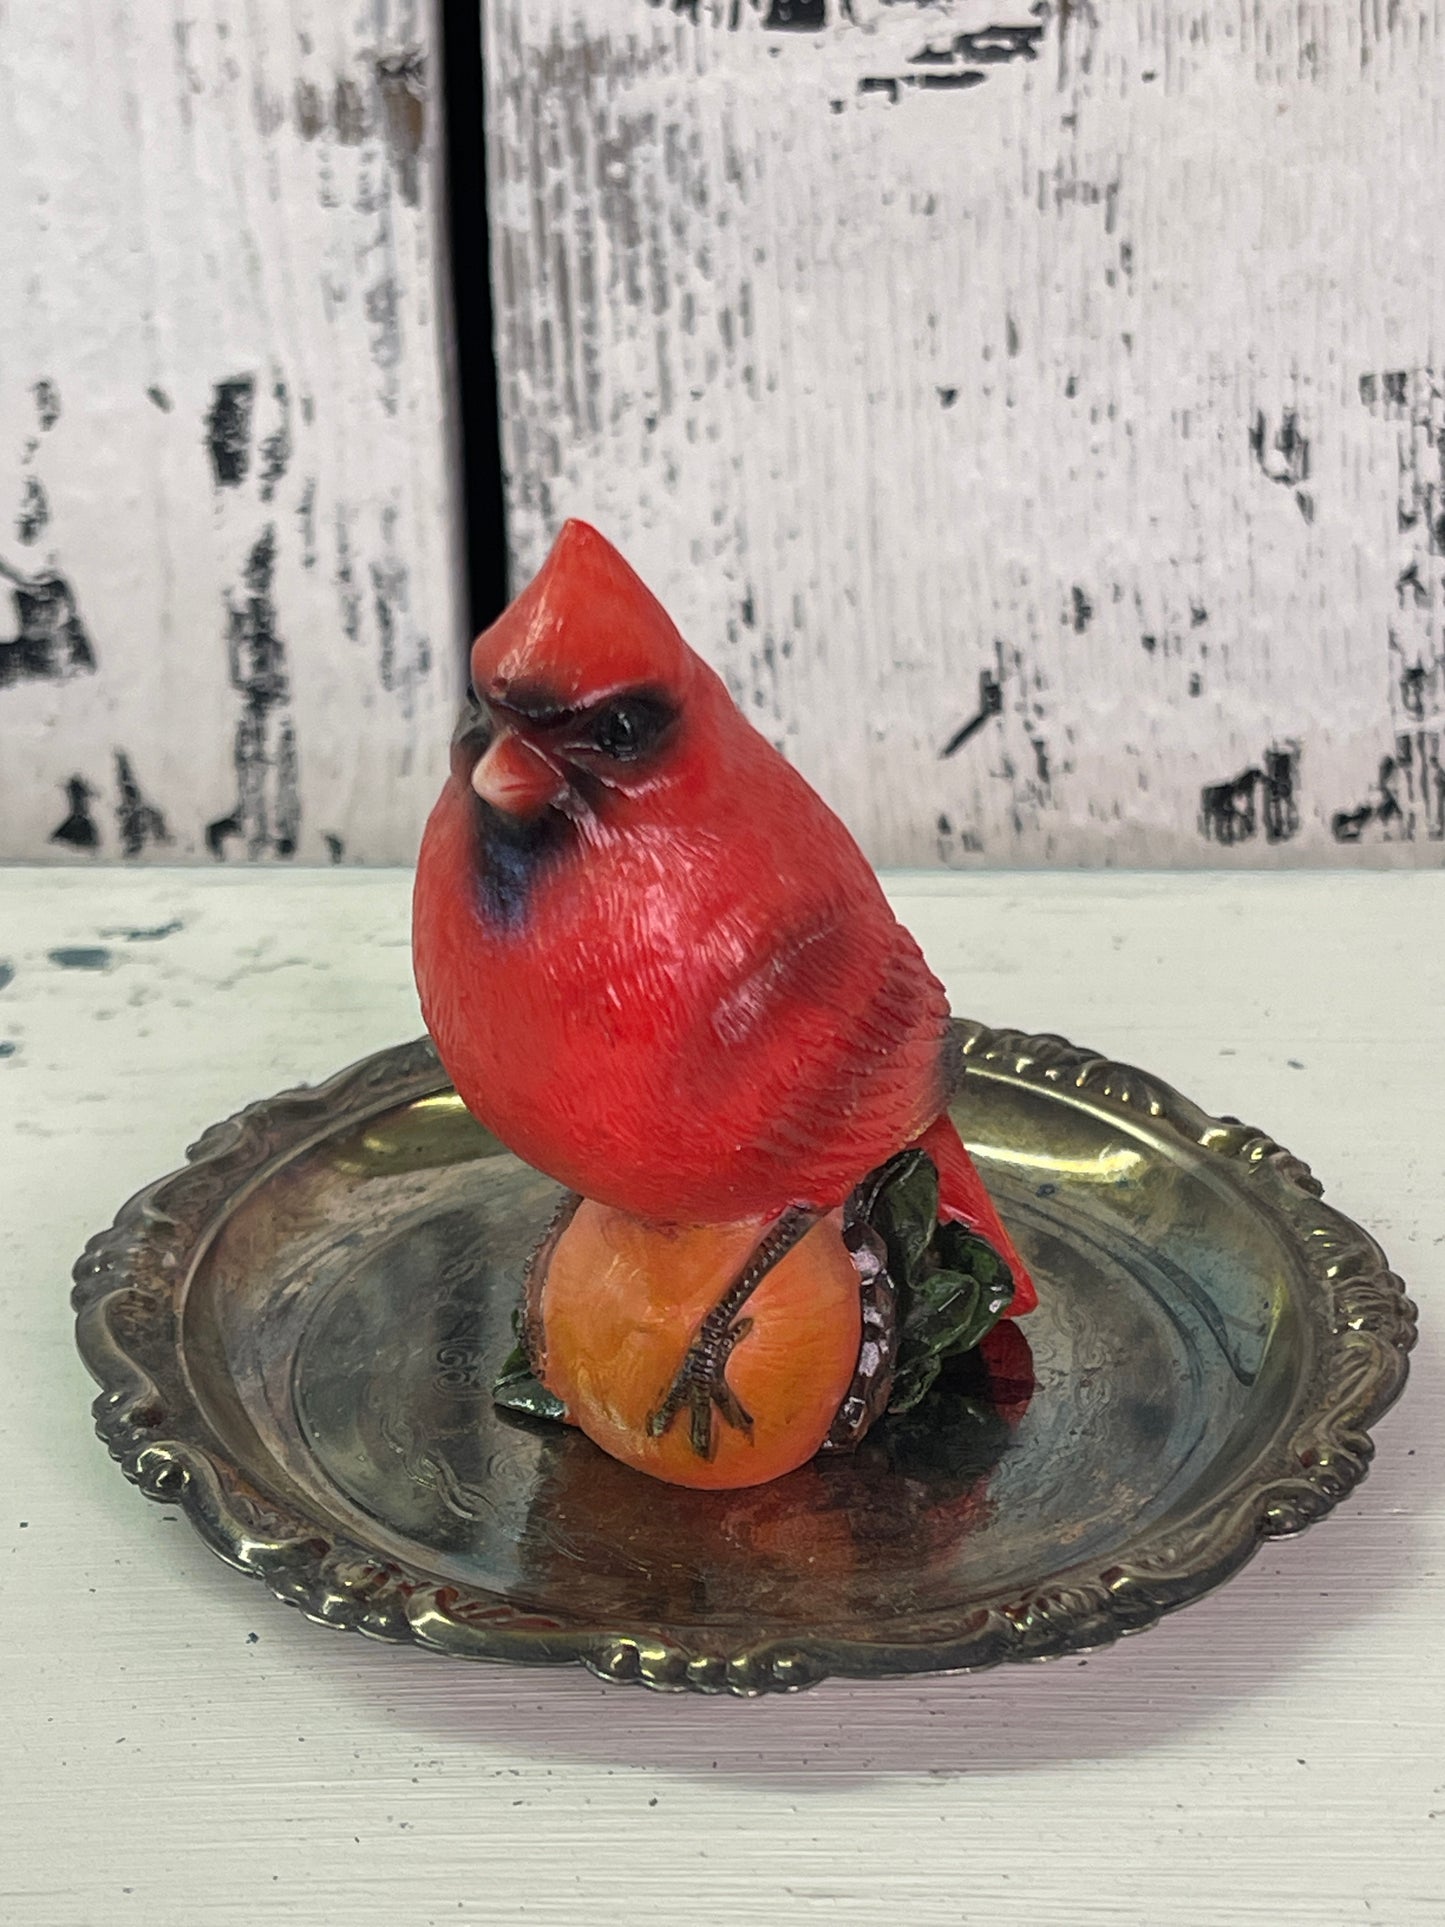 Cardinal Resin Bird